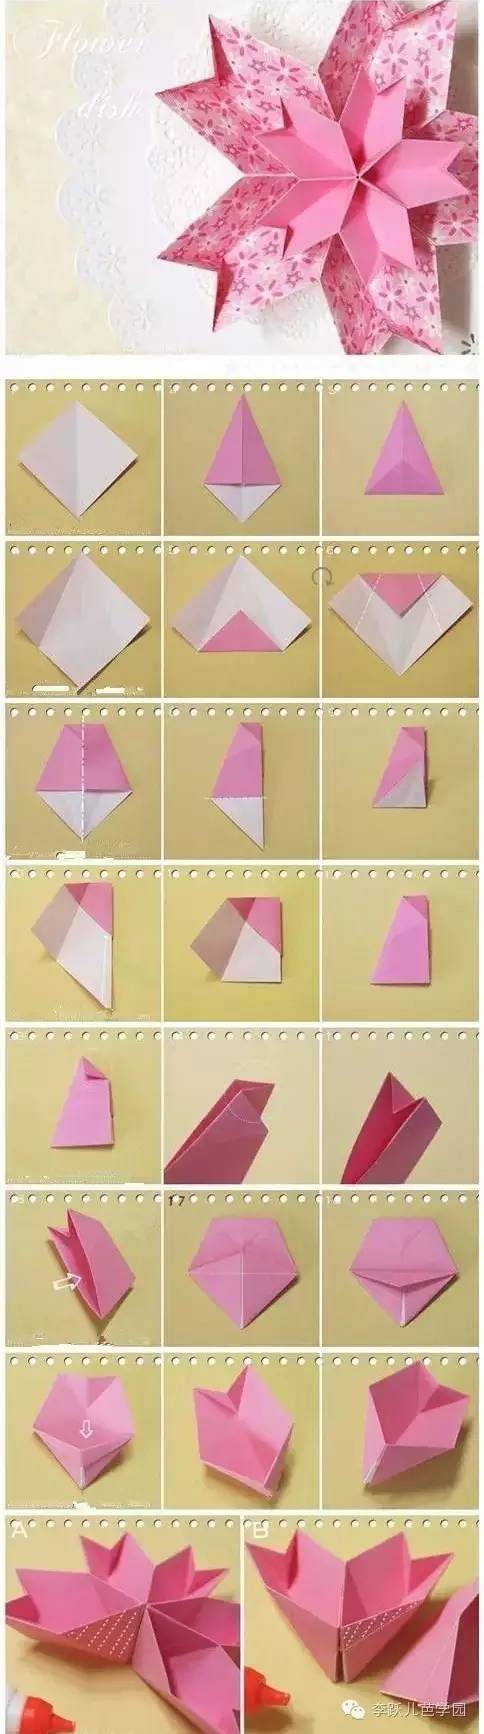 这些记忆中的折纸,你还记得多少.